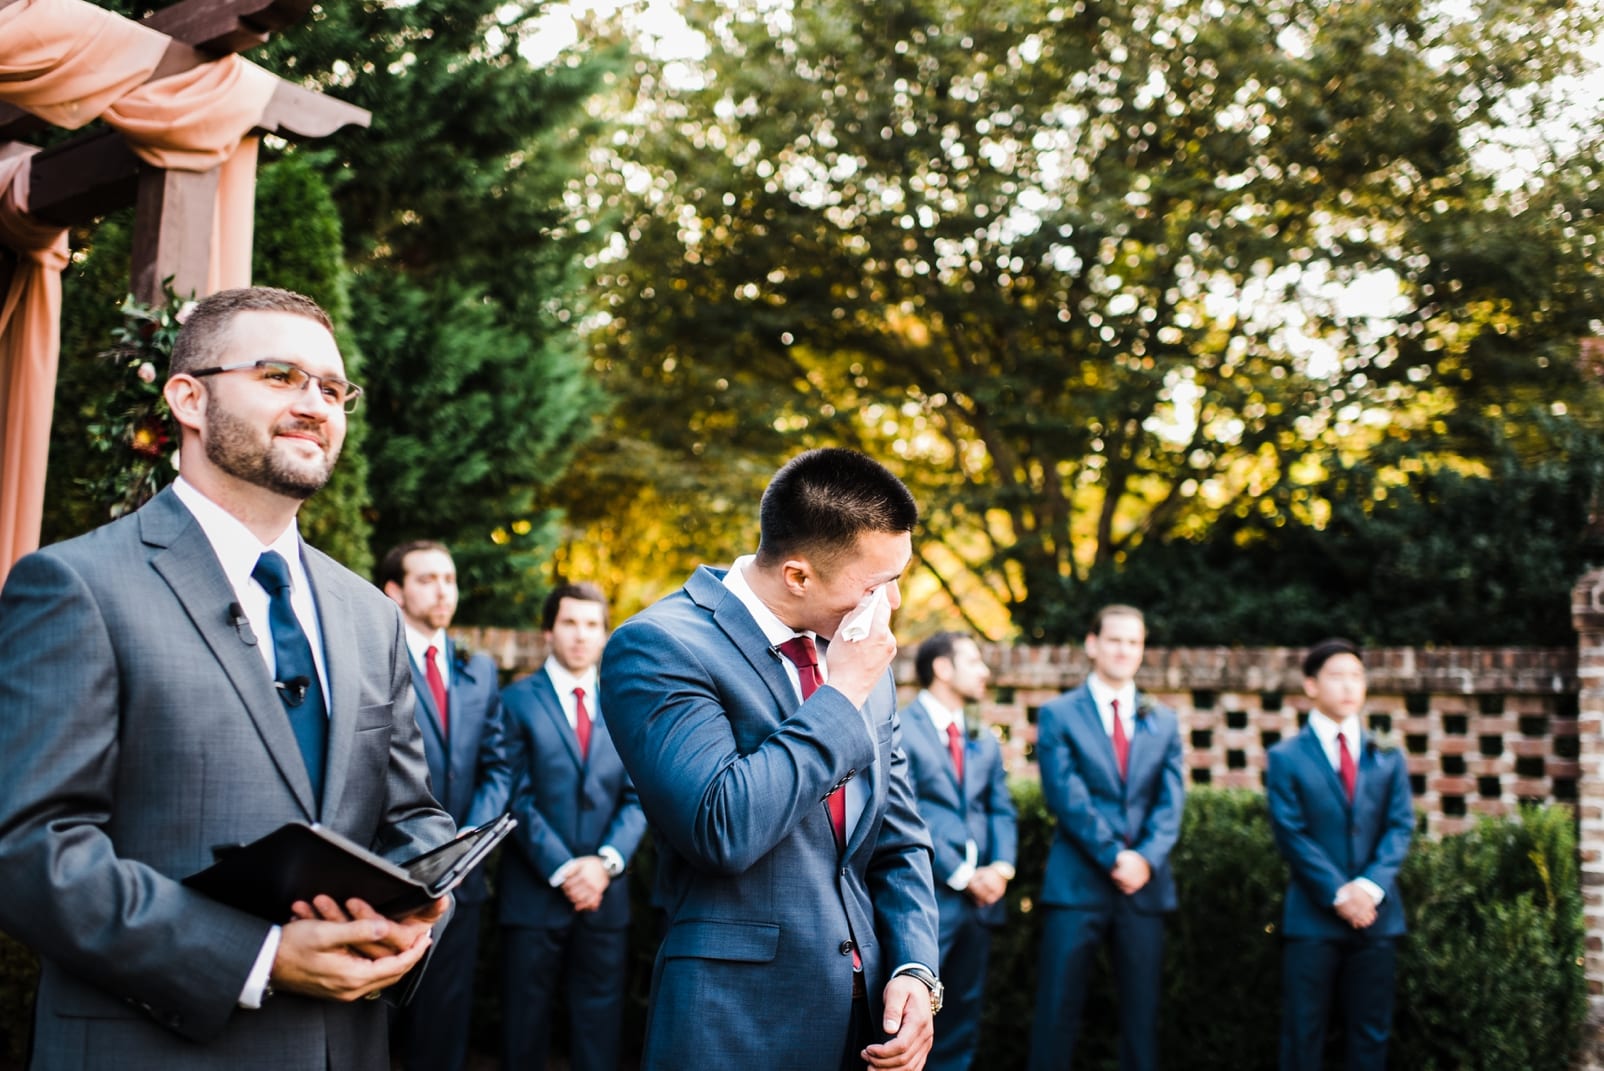 sutherland estate wedding photographer groom crying groom seeing bride groom in navy suit photo